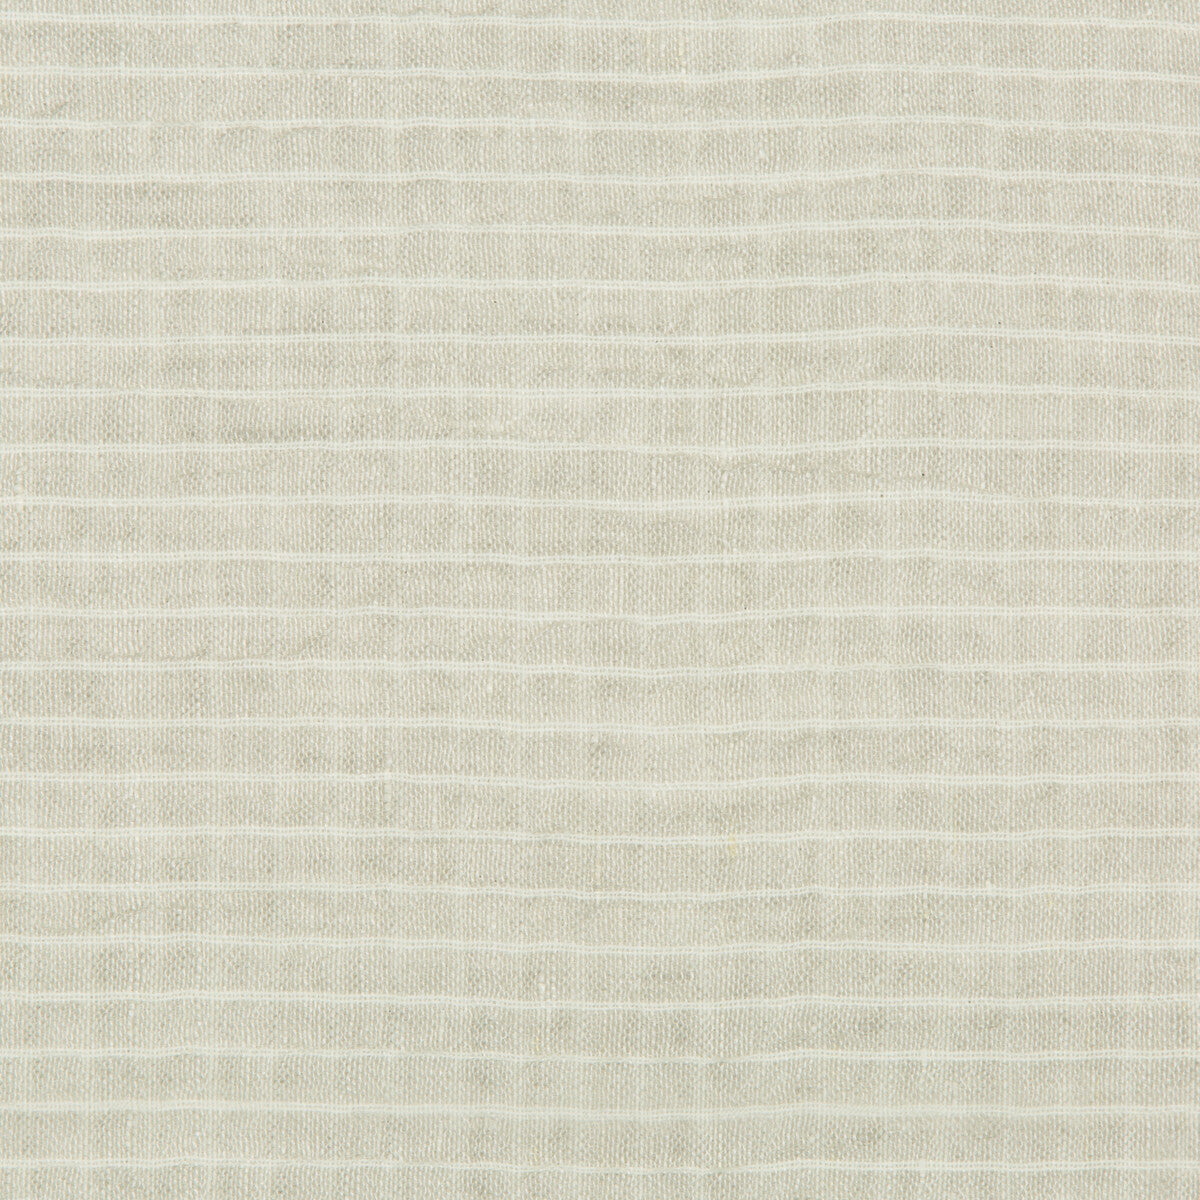 Kravet Design fabric in 4589-11 color - pattern 4589.11.0 - by Kravet Design